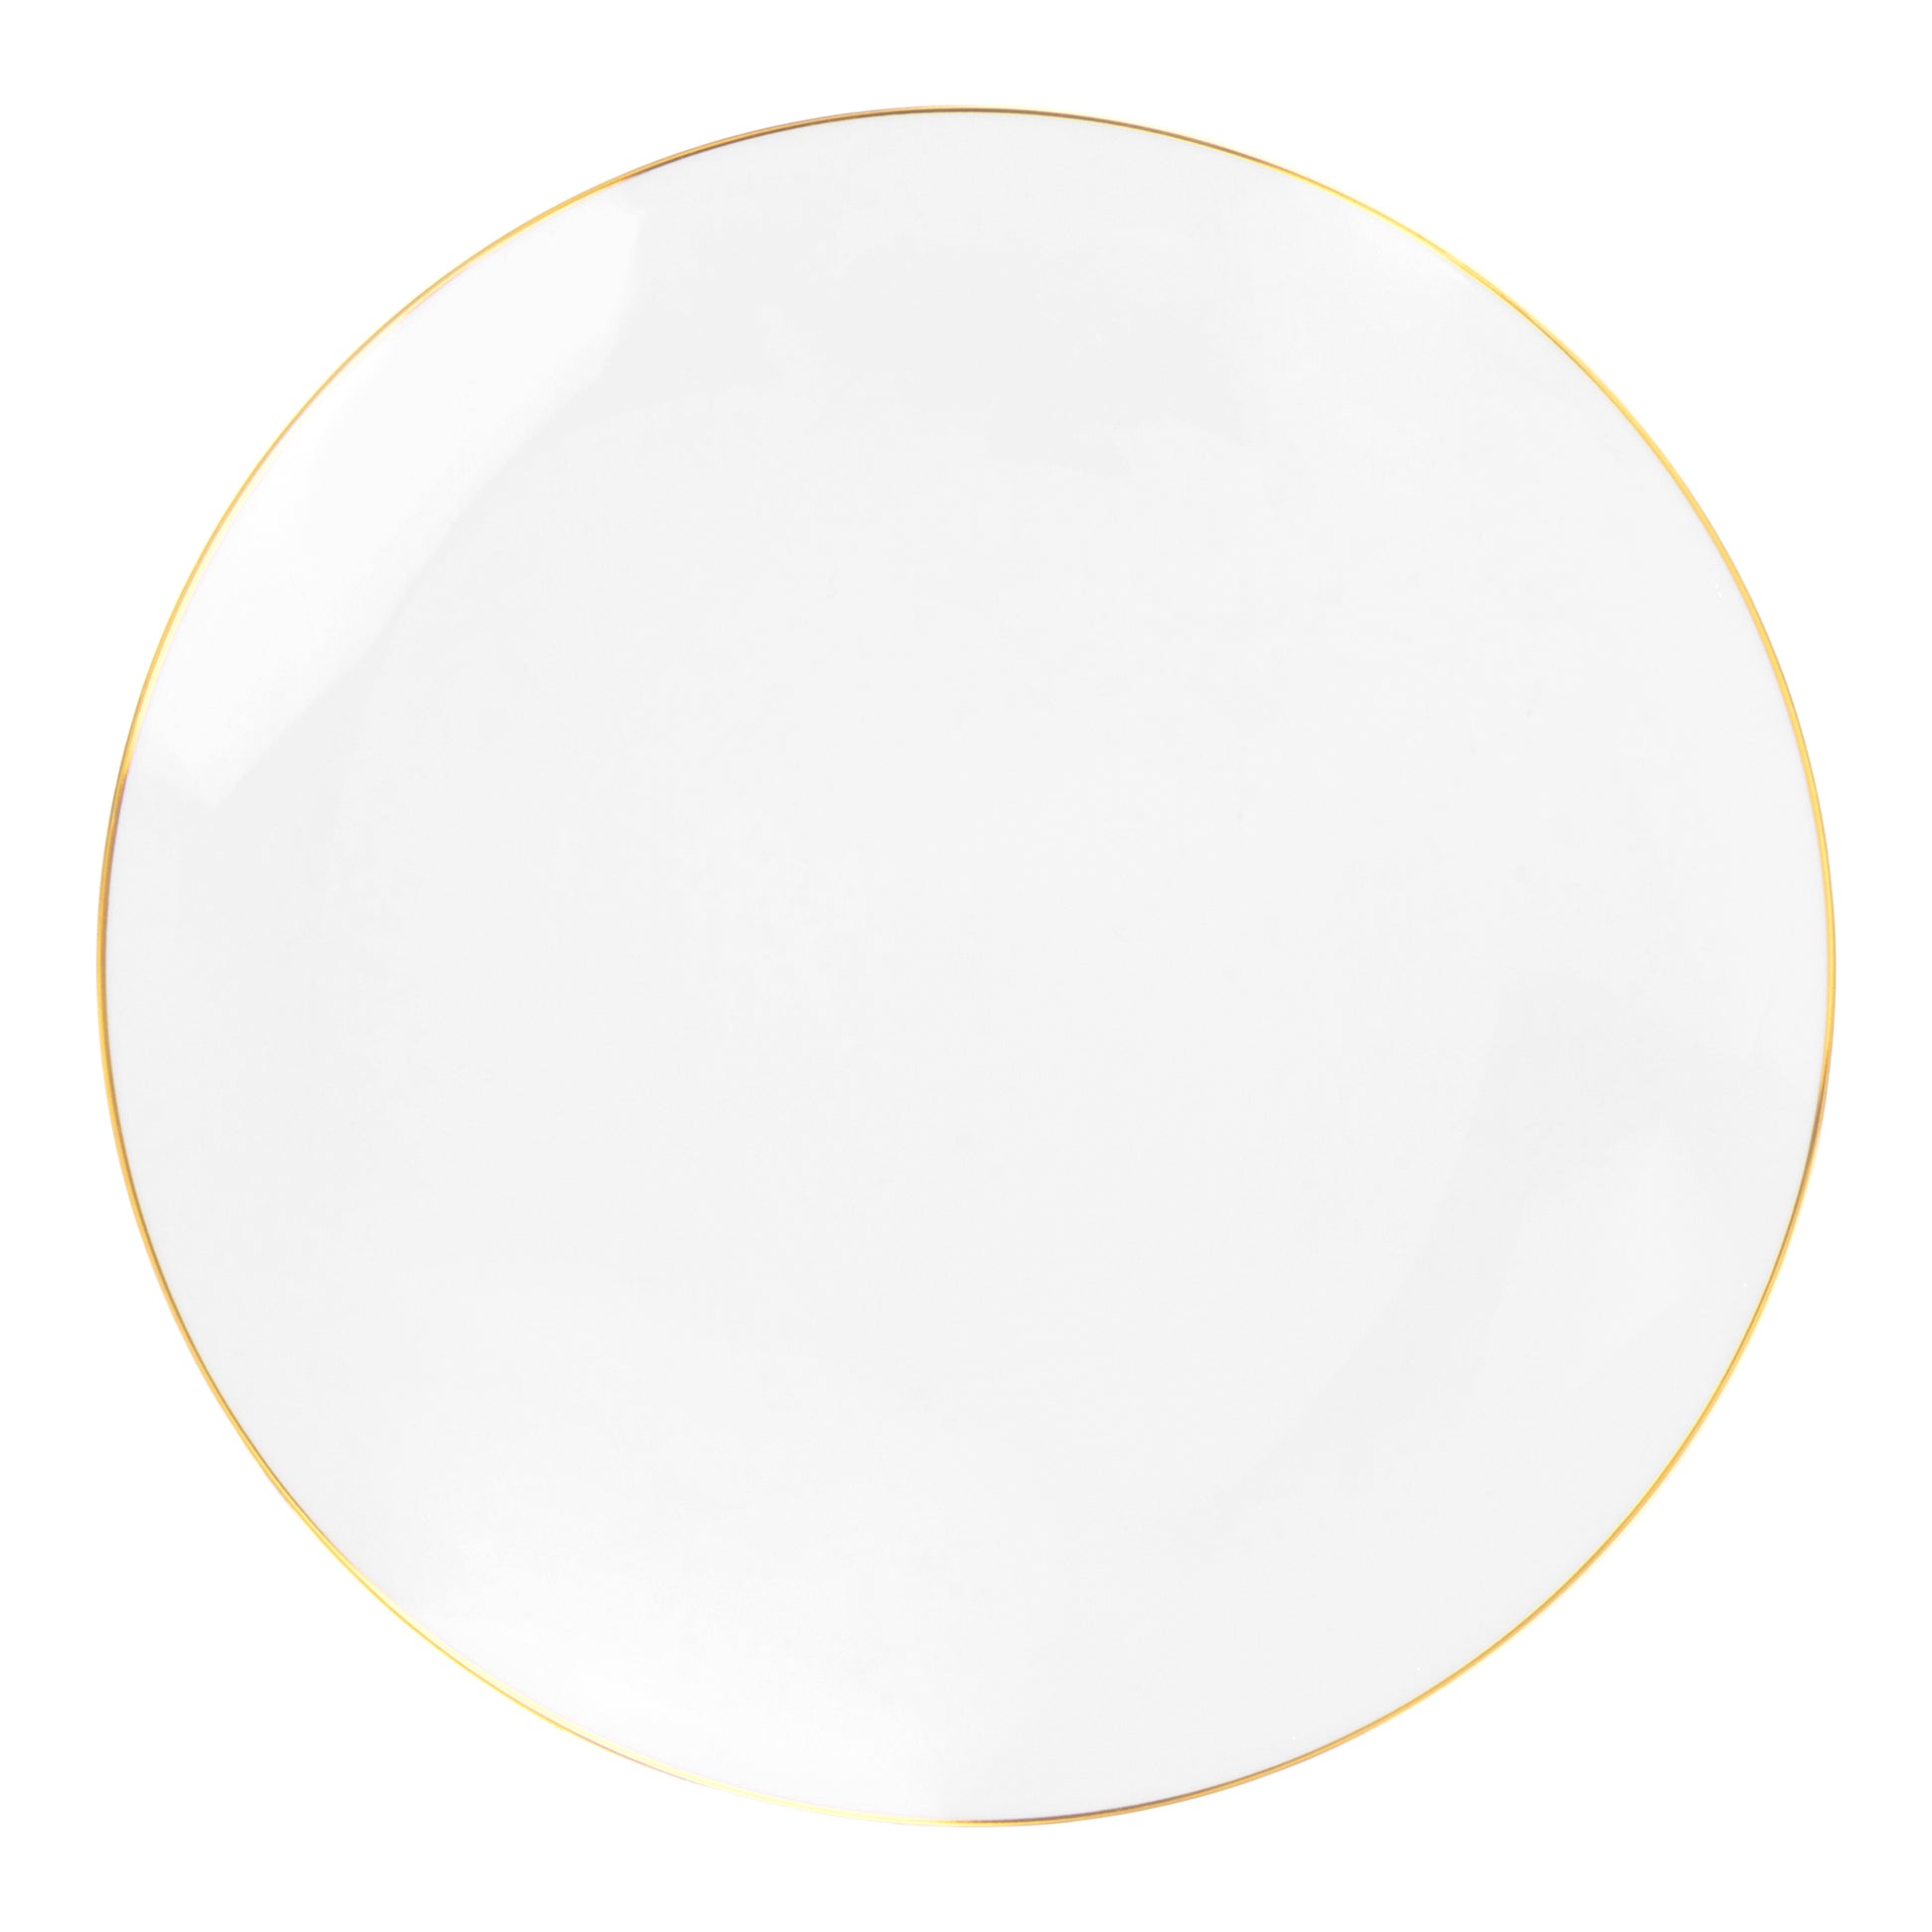 10 Disposable Round Plastic Dessert Plates Gold Rim